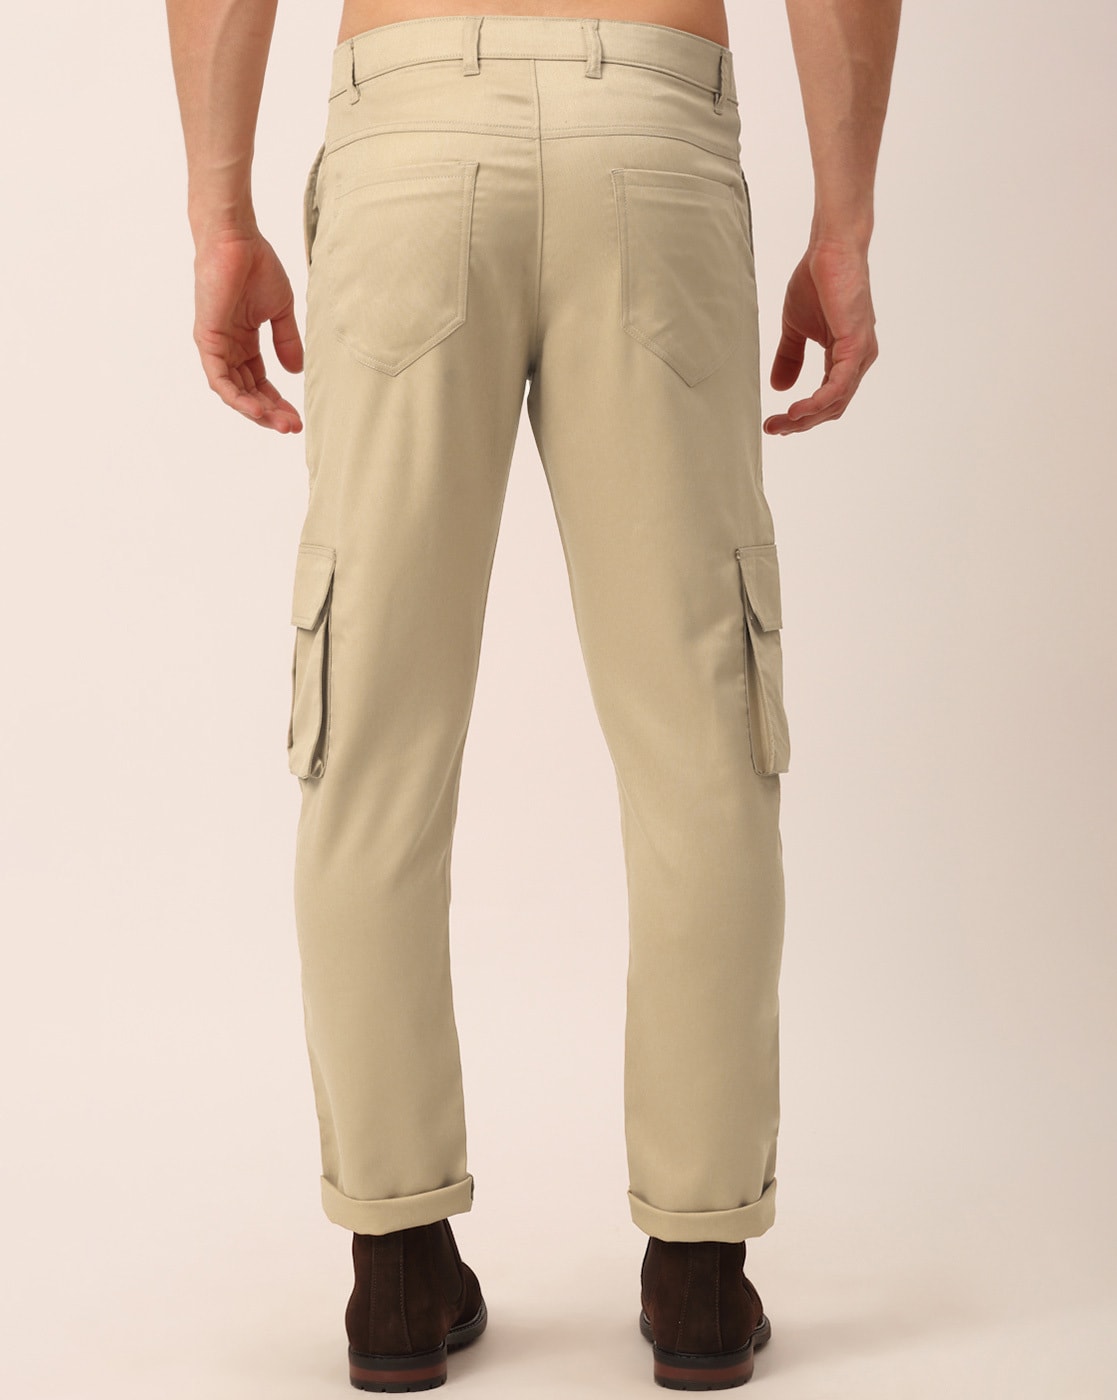 Buy White Trousers  Pants for Men by Hubberholme Online  Ajiocom